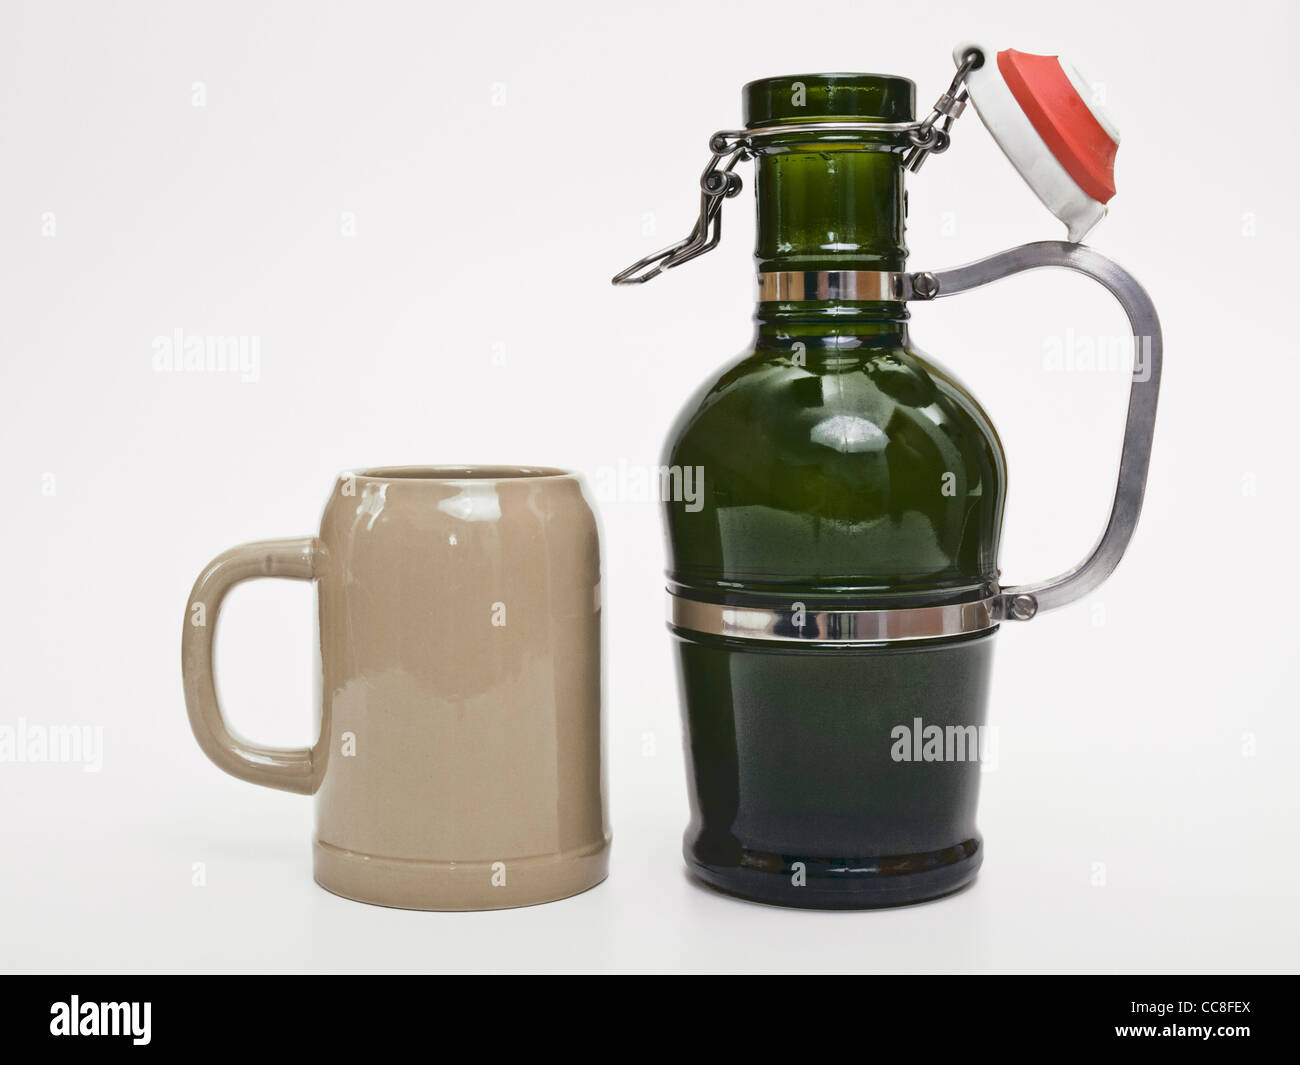 ein Biersyphon und ein Bierkrug | a Beer siphon and a beer mug Stock Photo